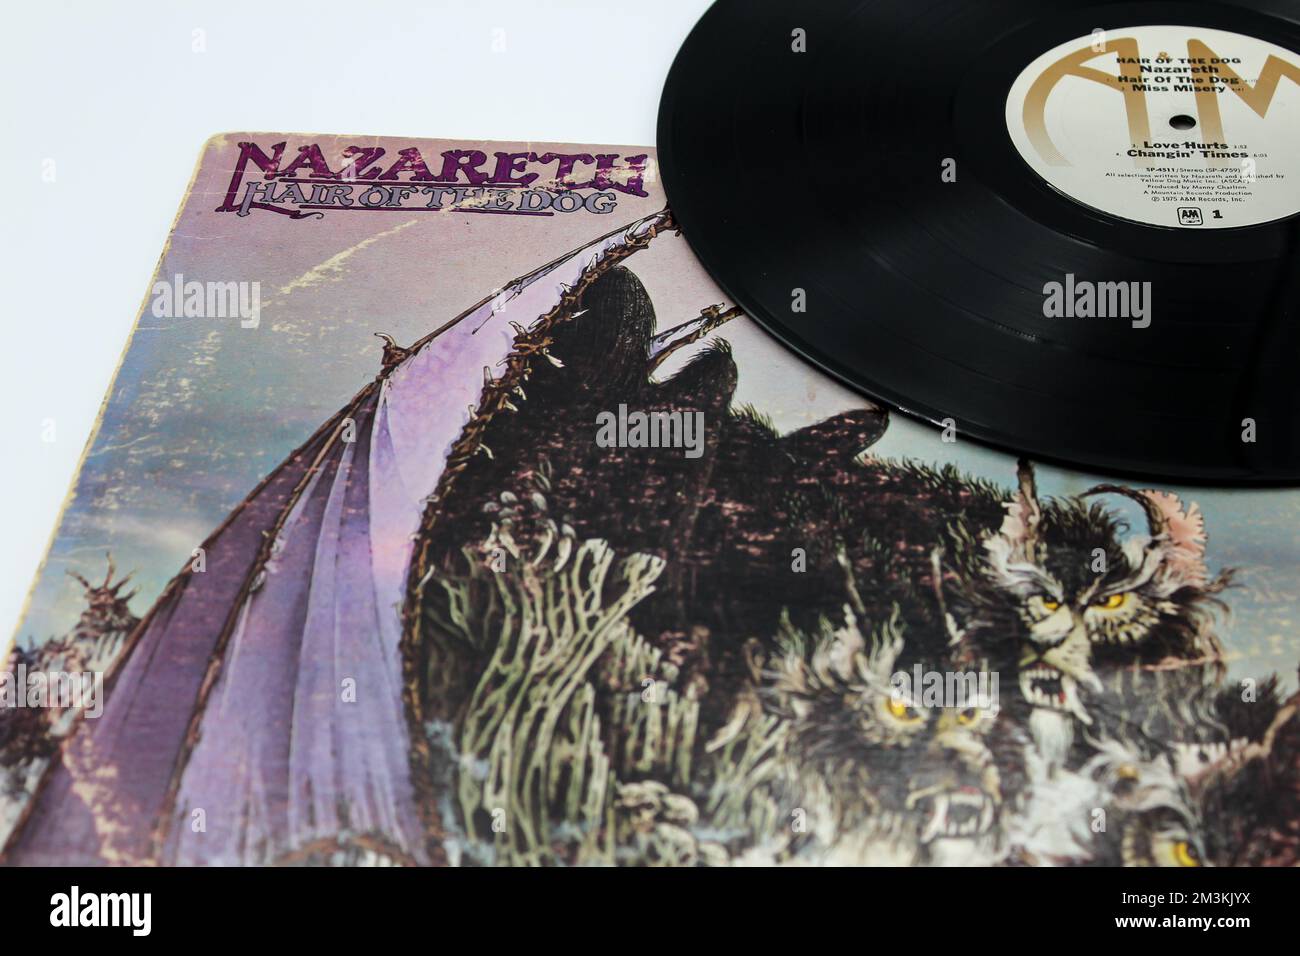 Hair of the Dog è il sesto album della band scozzese Nazareth, pubblicato sulla copertina del disco in vinile. Foto Stock